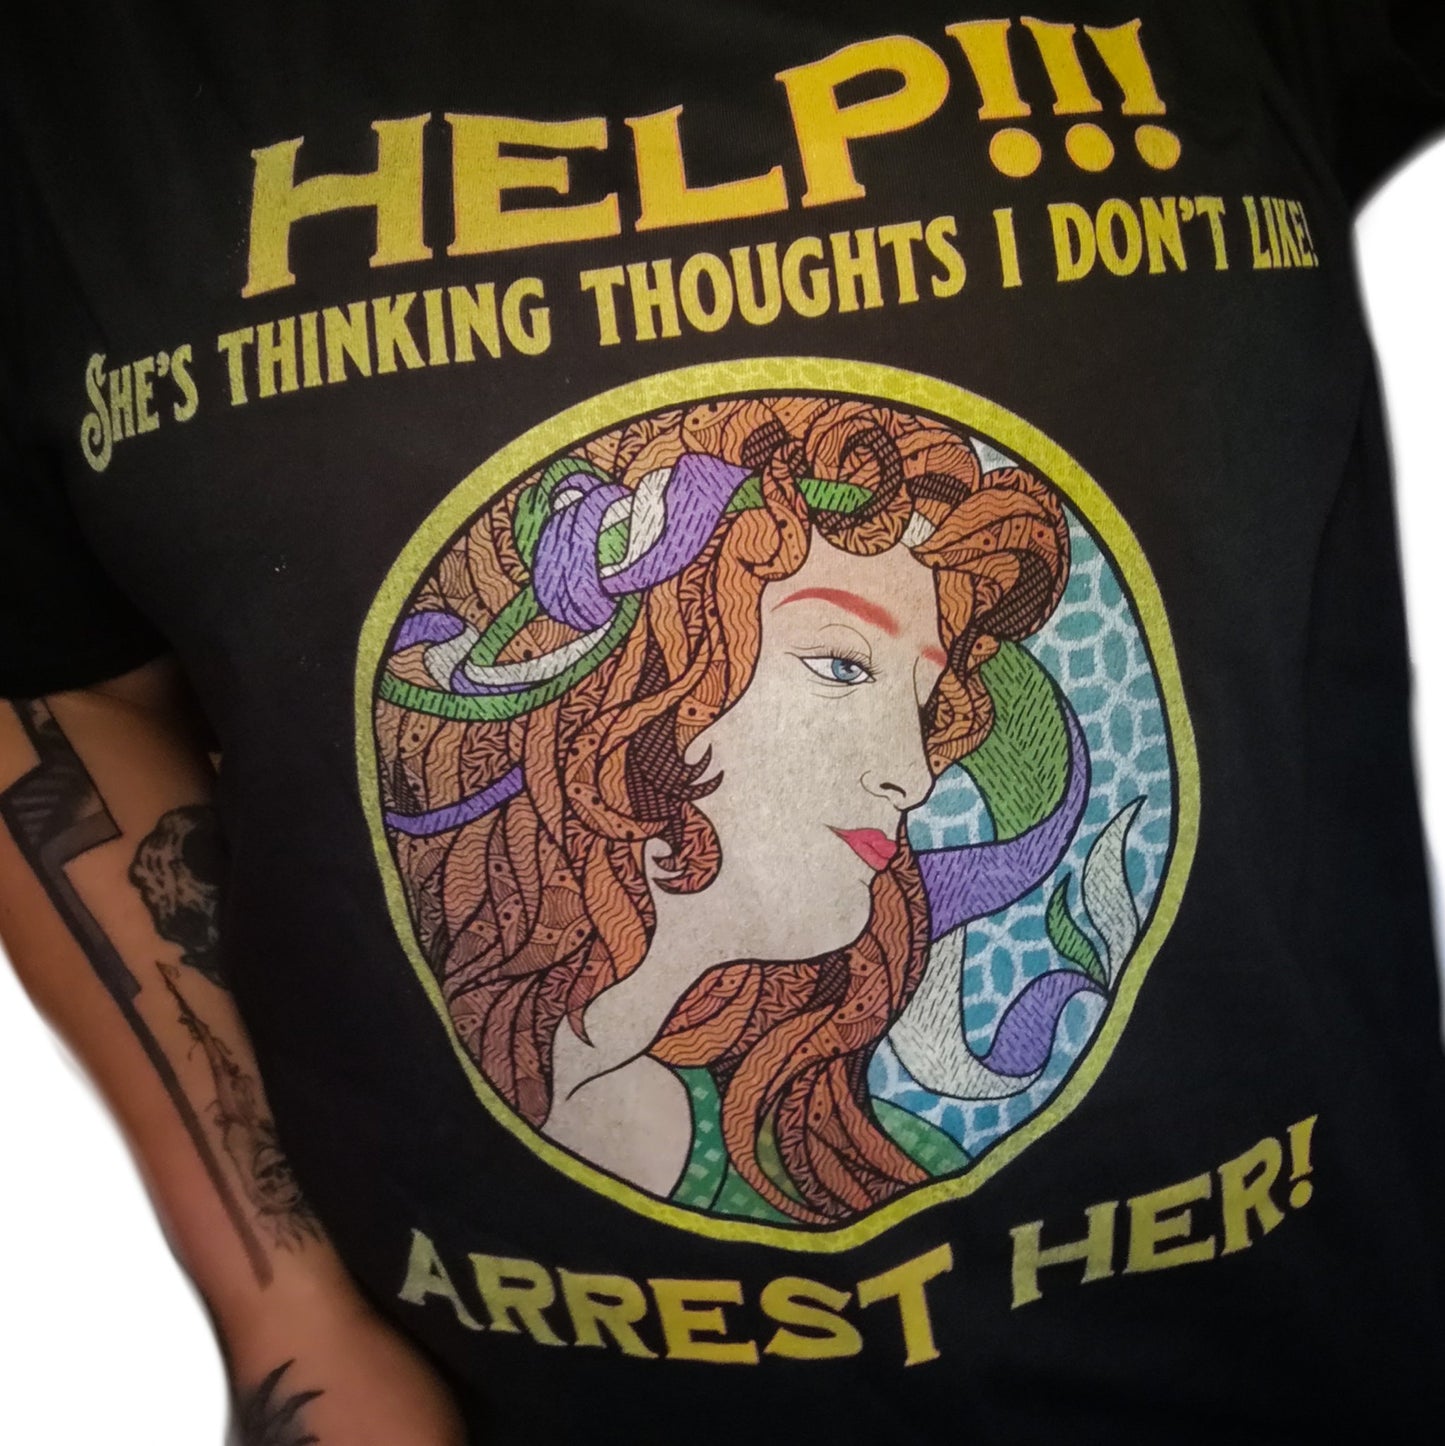 Arrest Her! T-Shirt